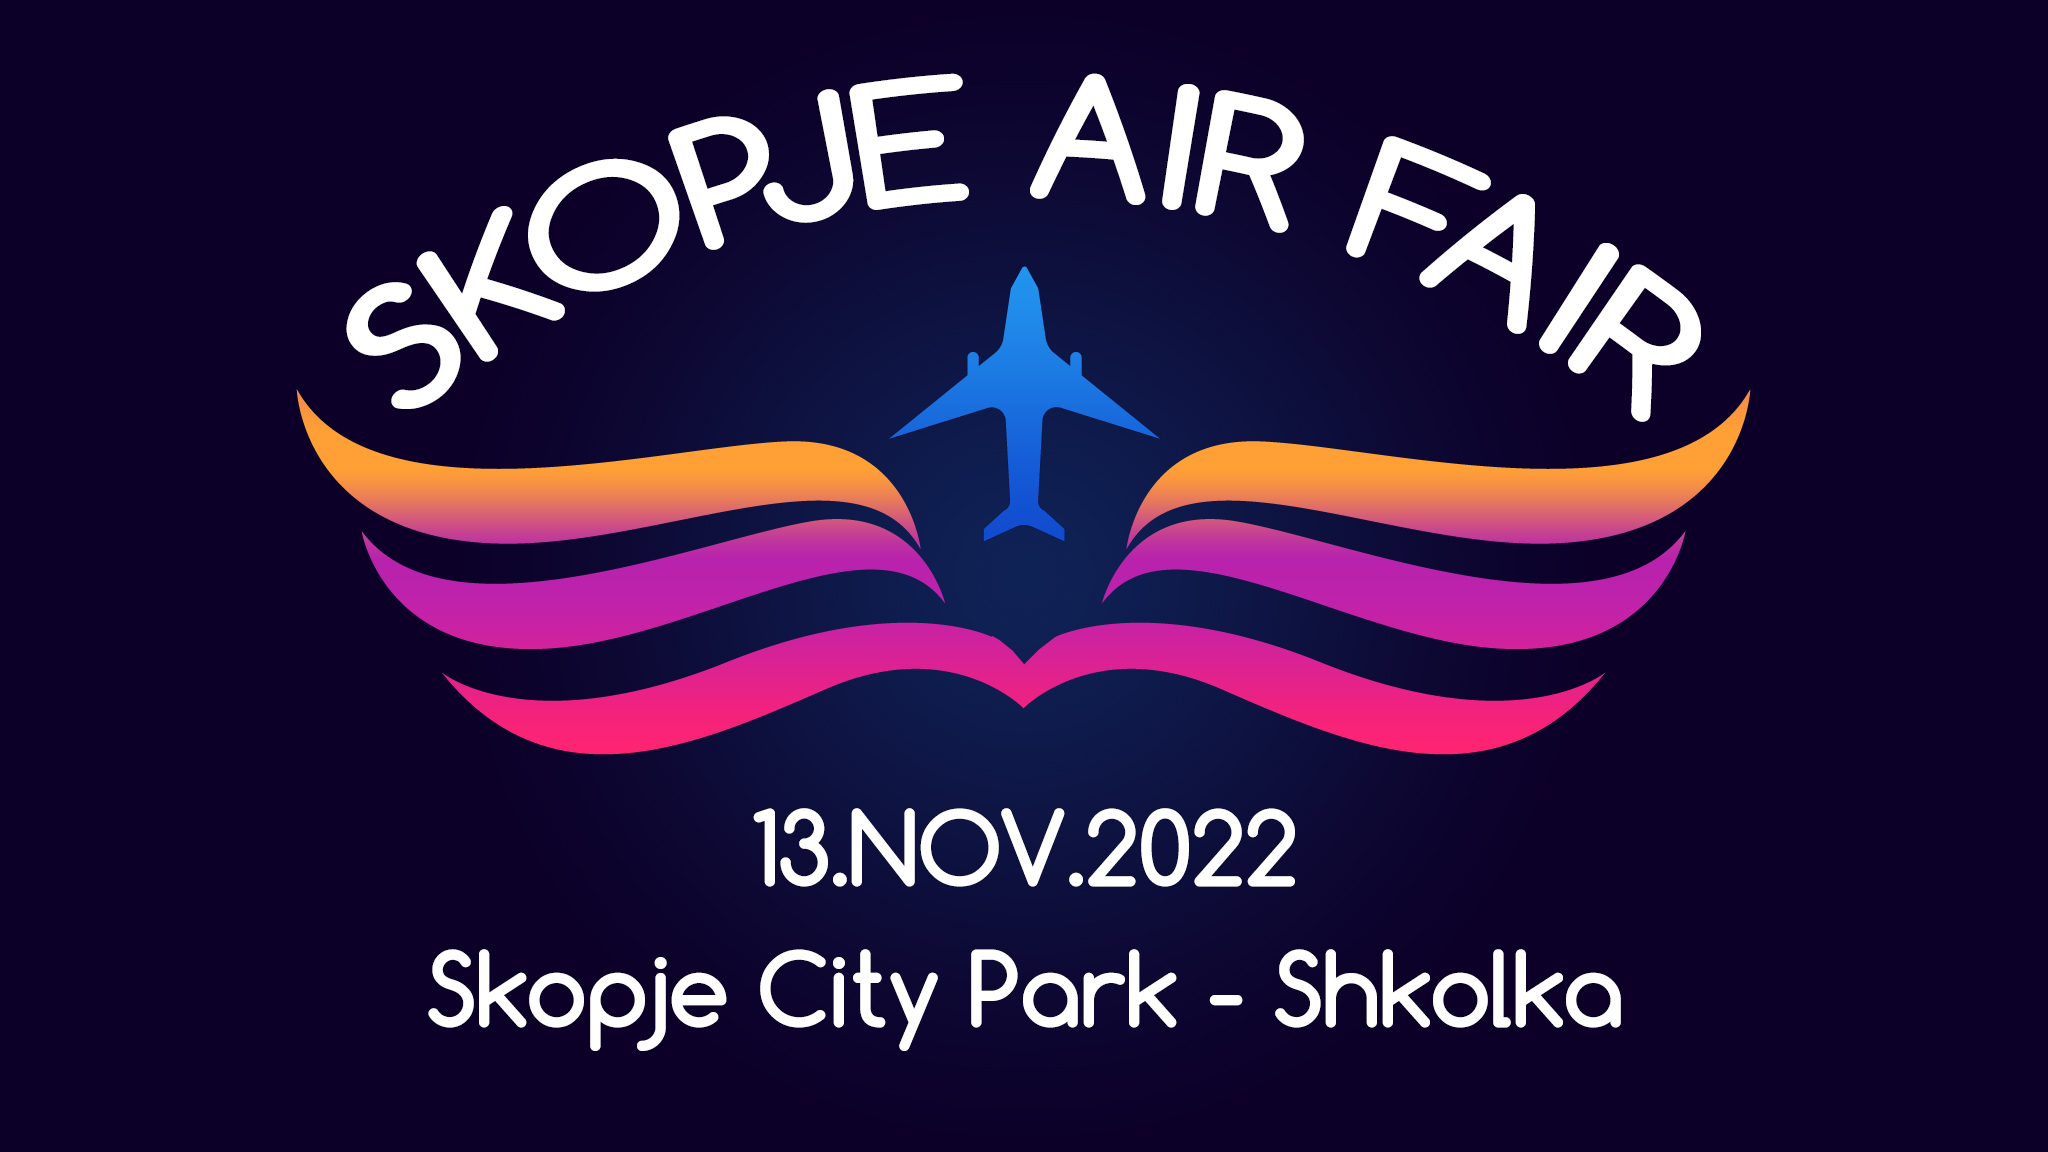 Skopje-Air-Fair-2022